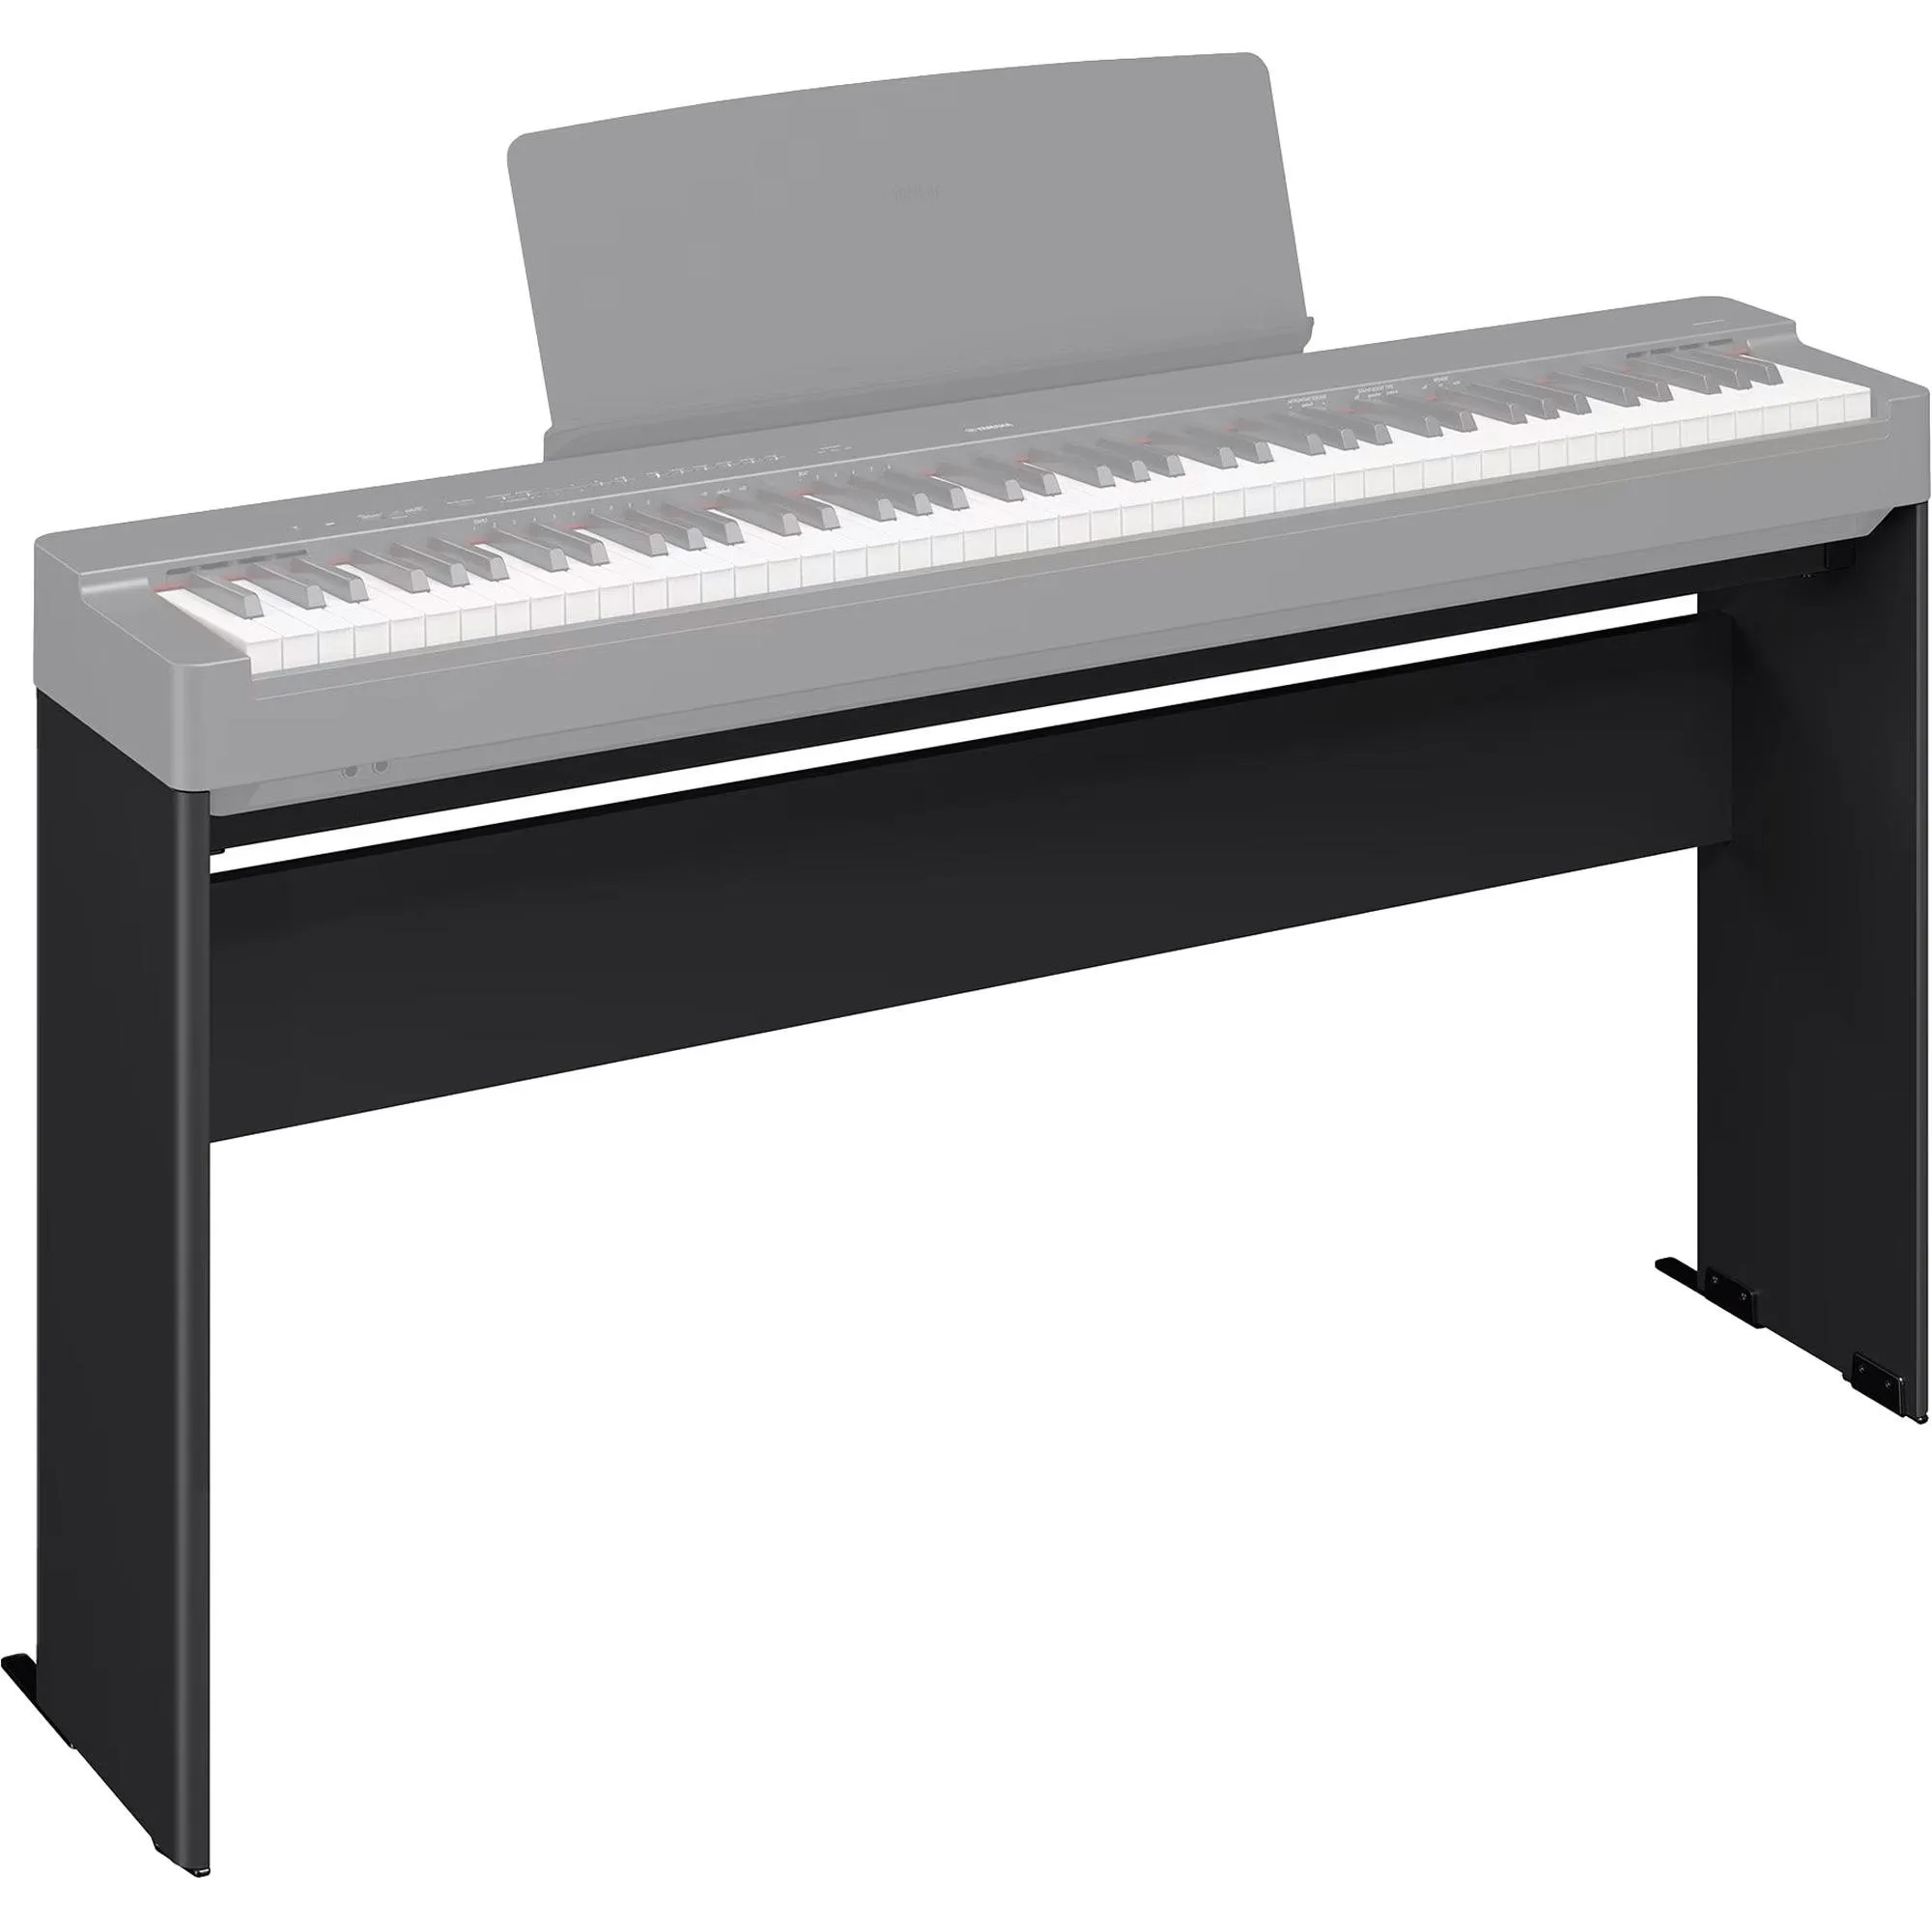 Estante Para Piano Digital L200 Yamaha Preta por 1.179,99 à vista no boleto/pix ou parcele em até 12x sem juros. Compre na loja Mundomax!